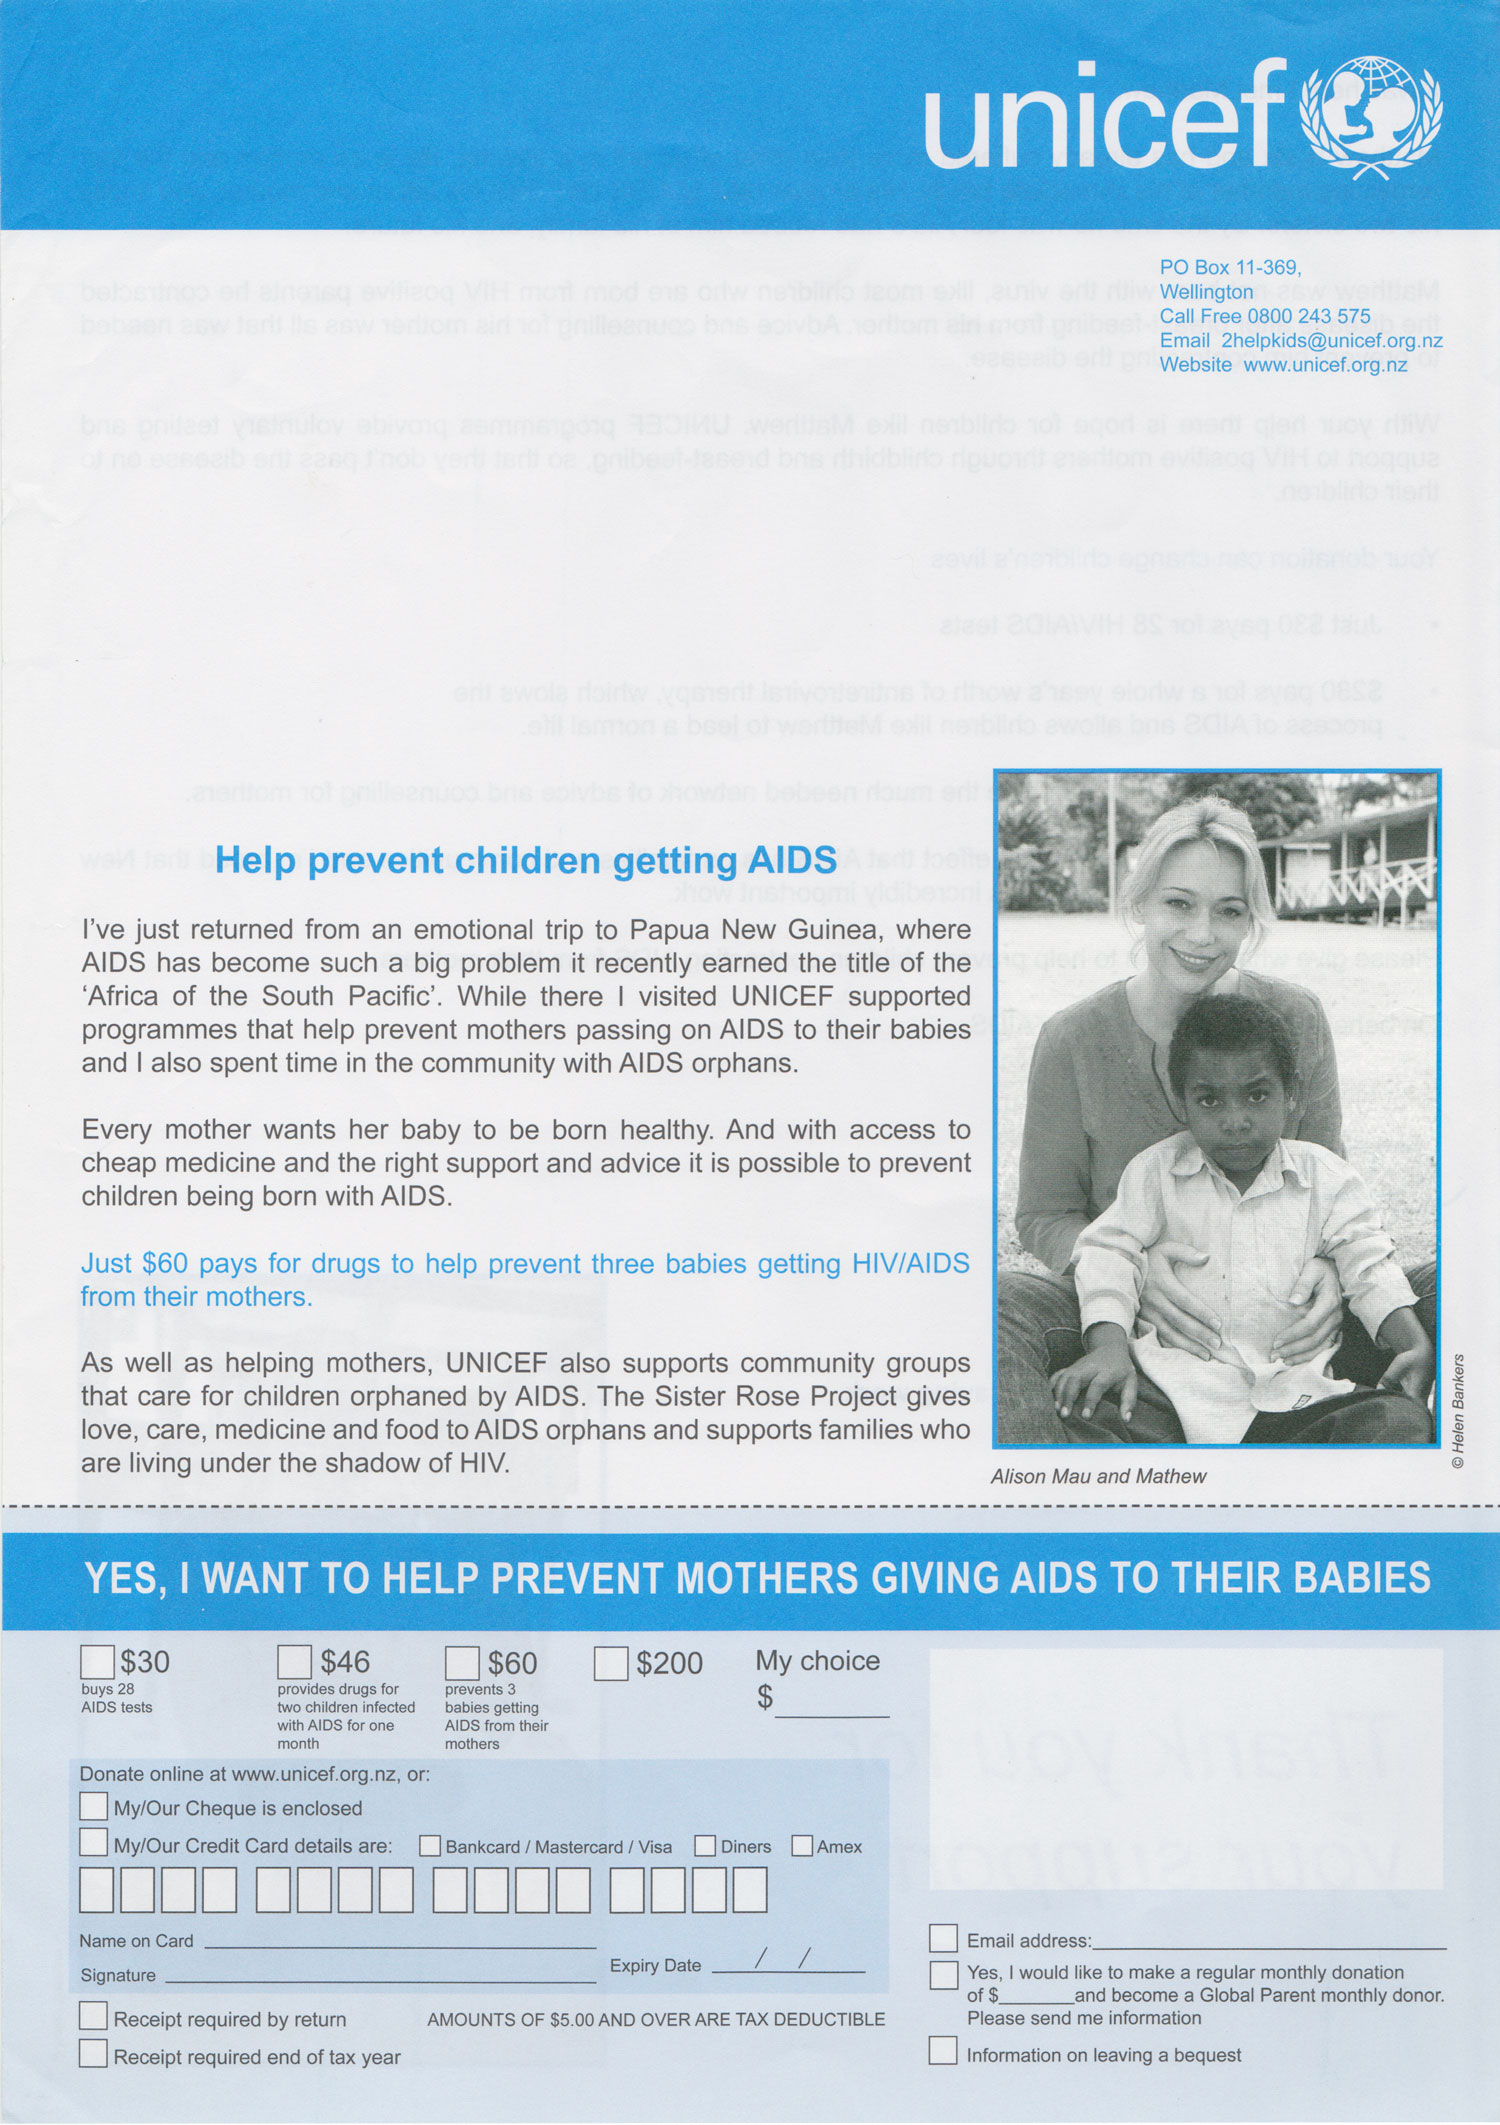 unicef-children-aids-front.jpg